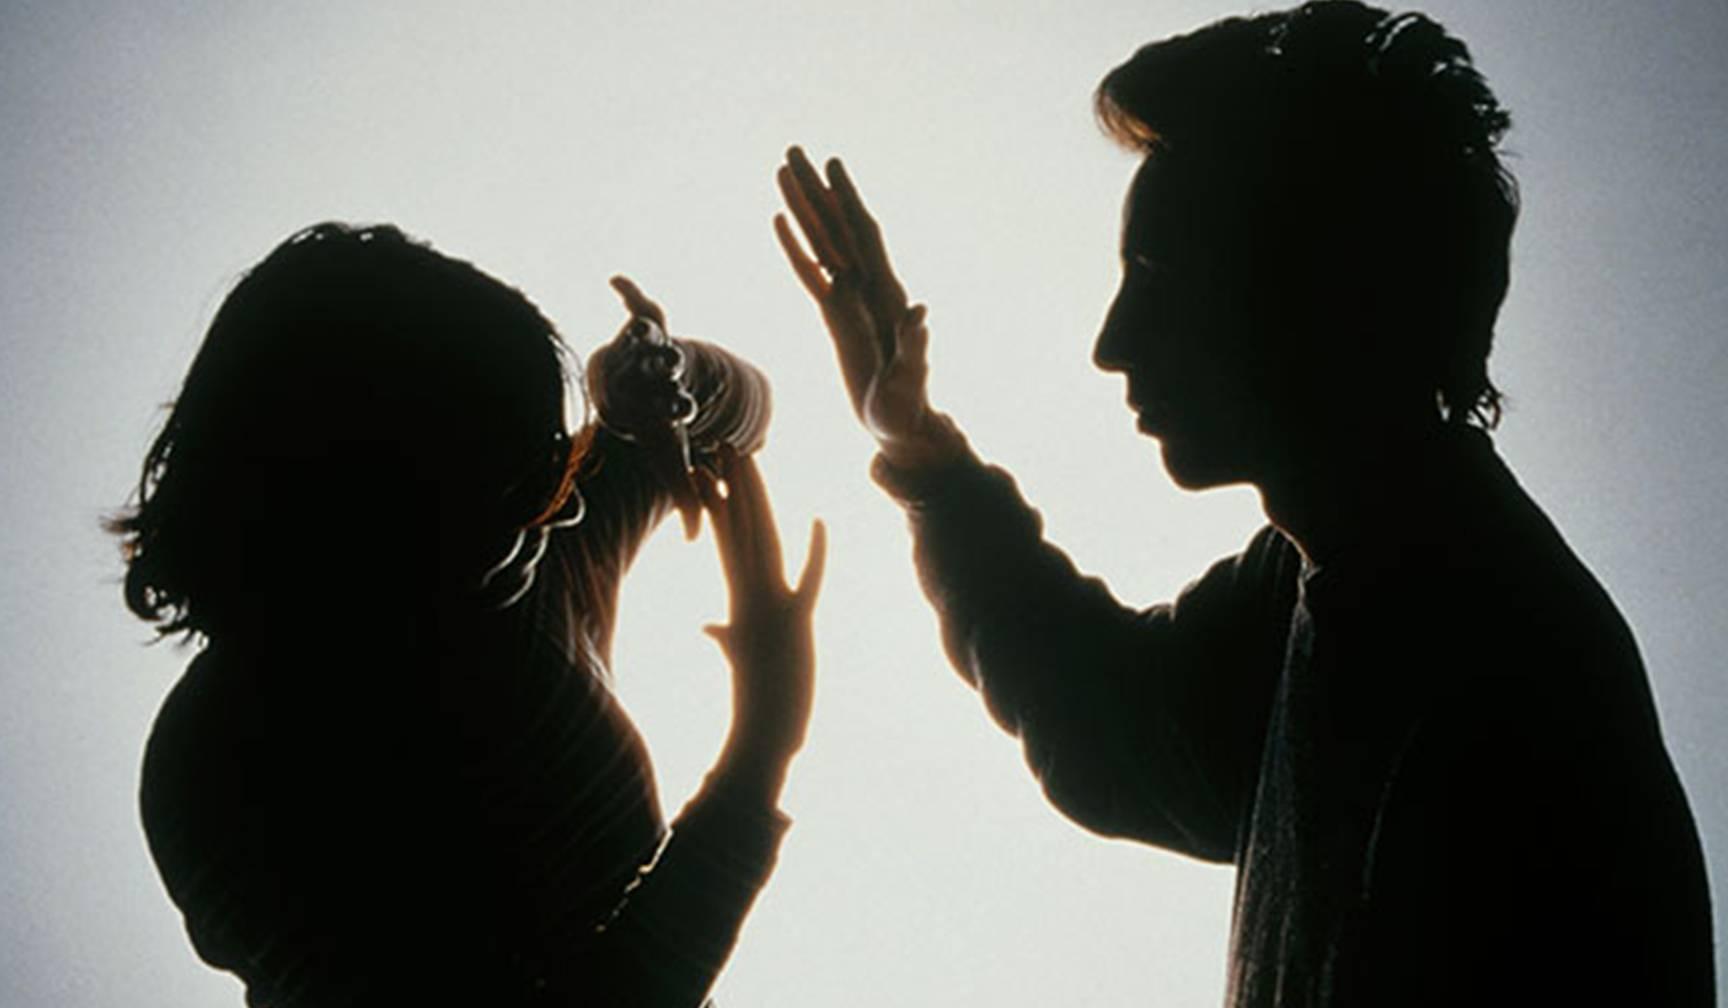 पति-पत्नी के बीच झगड़ा होने की वजह कहीं ये तो नहीं, साथ ही जाने दूर करने के उपाय